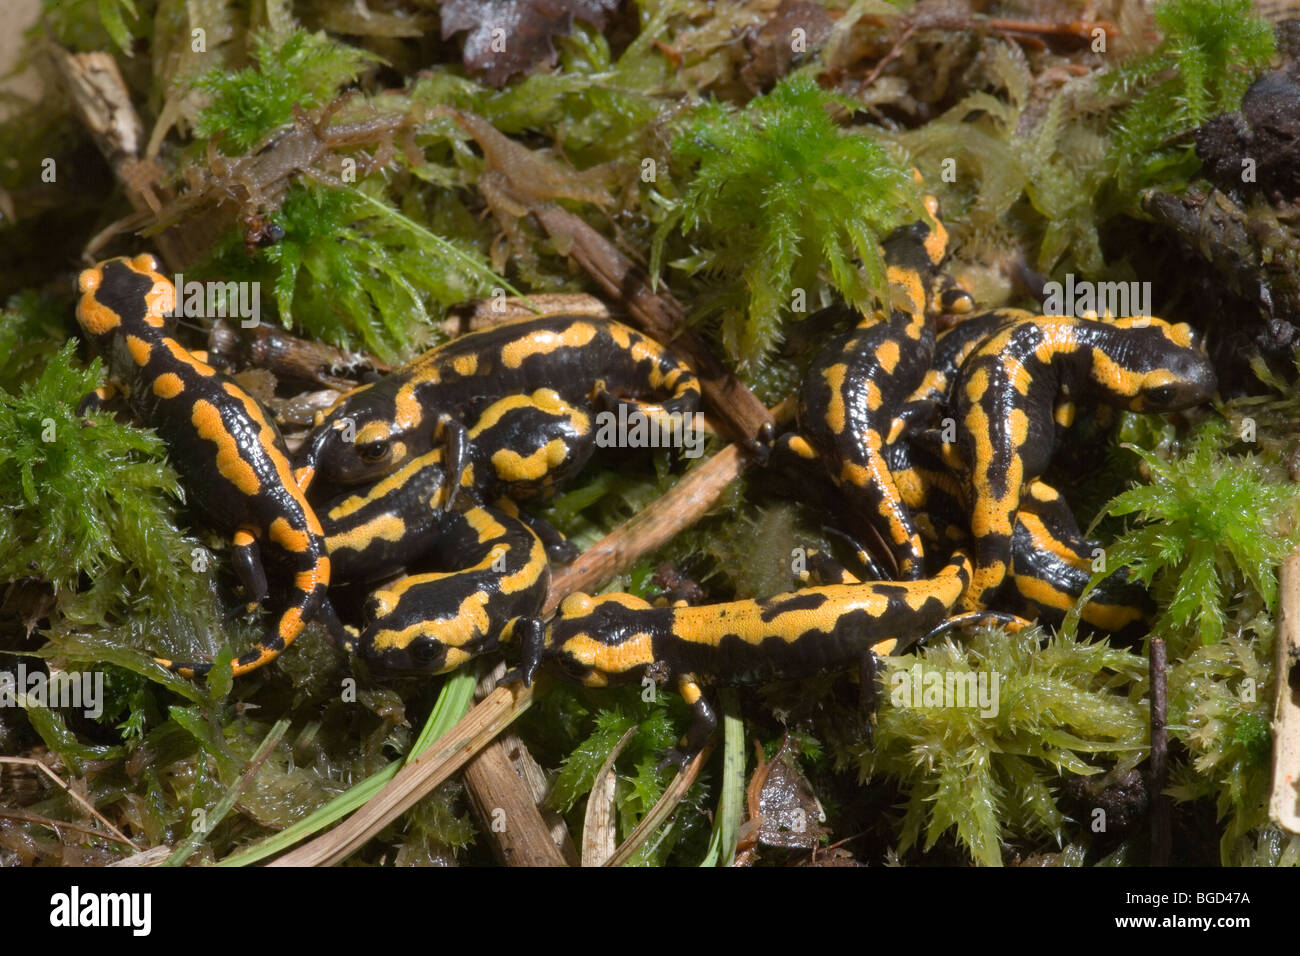 Unión Fire Salamandras (Salamandra salamandra). Las salamandras, los jóvenes sólo se metamorfosean, ahora en la tierra vivir una vida terrestre. Foto de stock